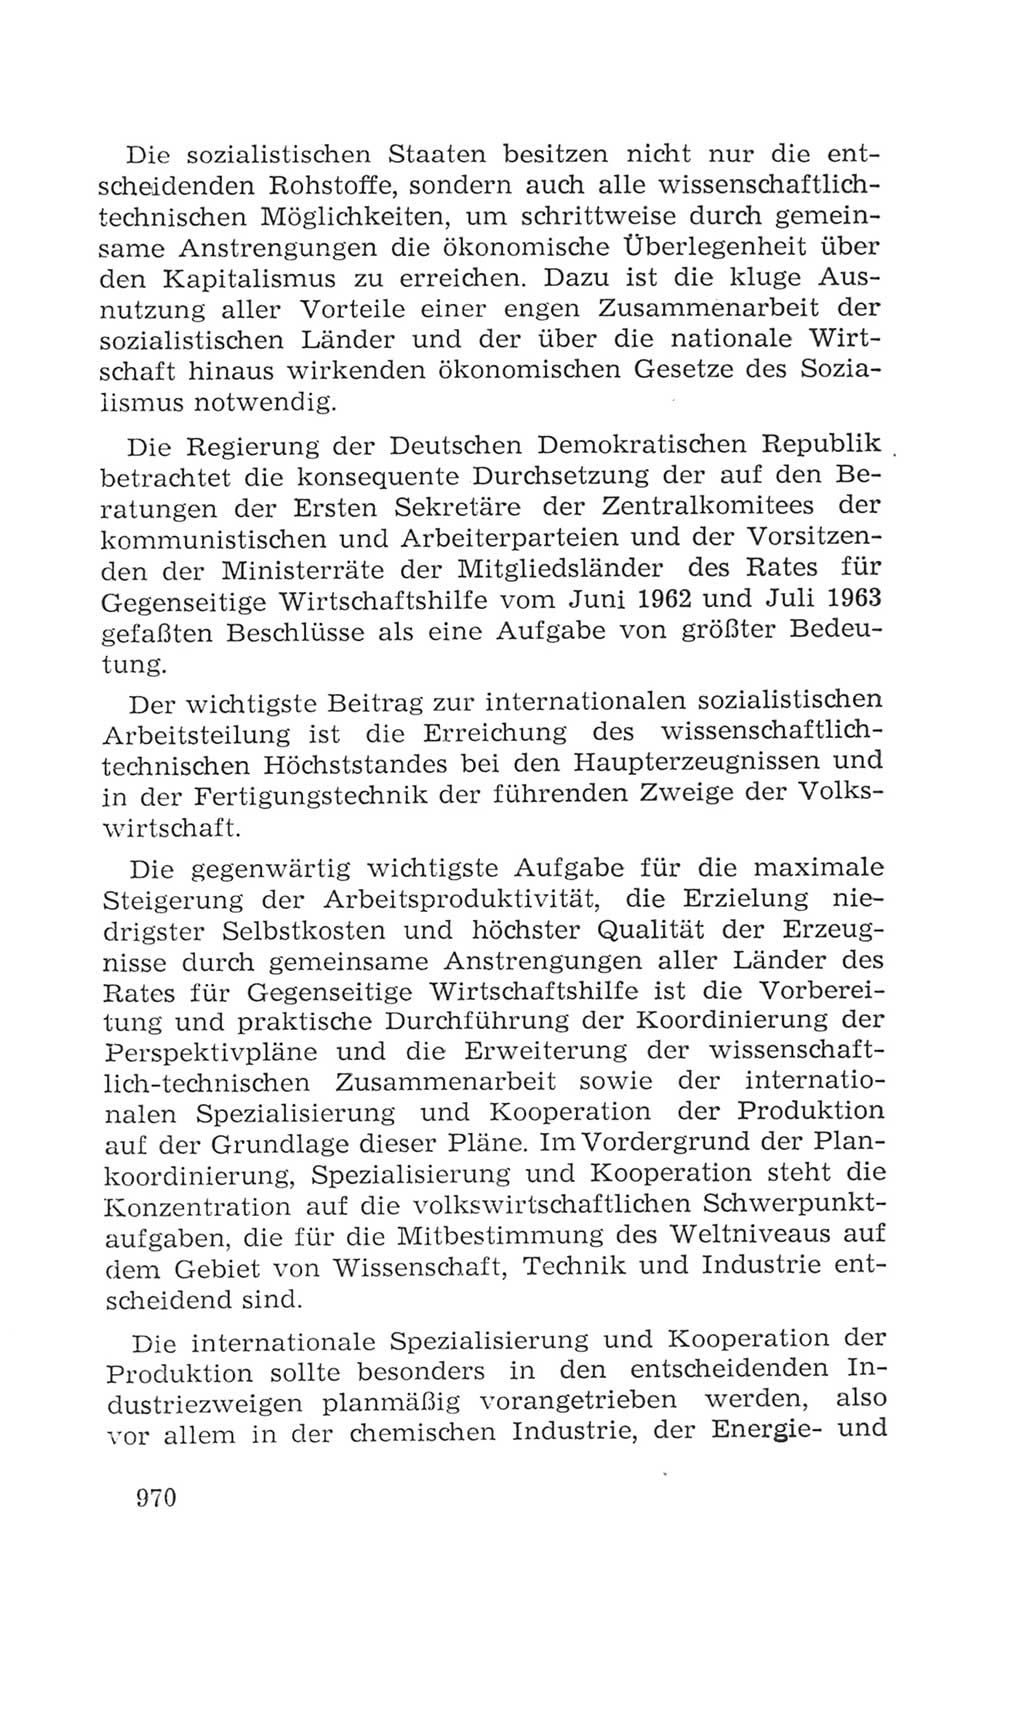 Volkskammer (VK) der Deutschen Demokratischen Republik (DDR), 4. Wahlperiode 1963-1967, Seite 970 (VK. DDR 4. WP. 1963-1967, S. 970)